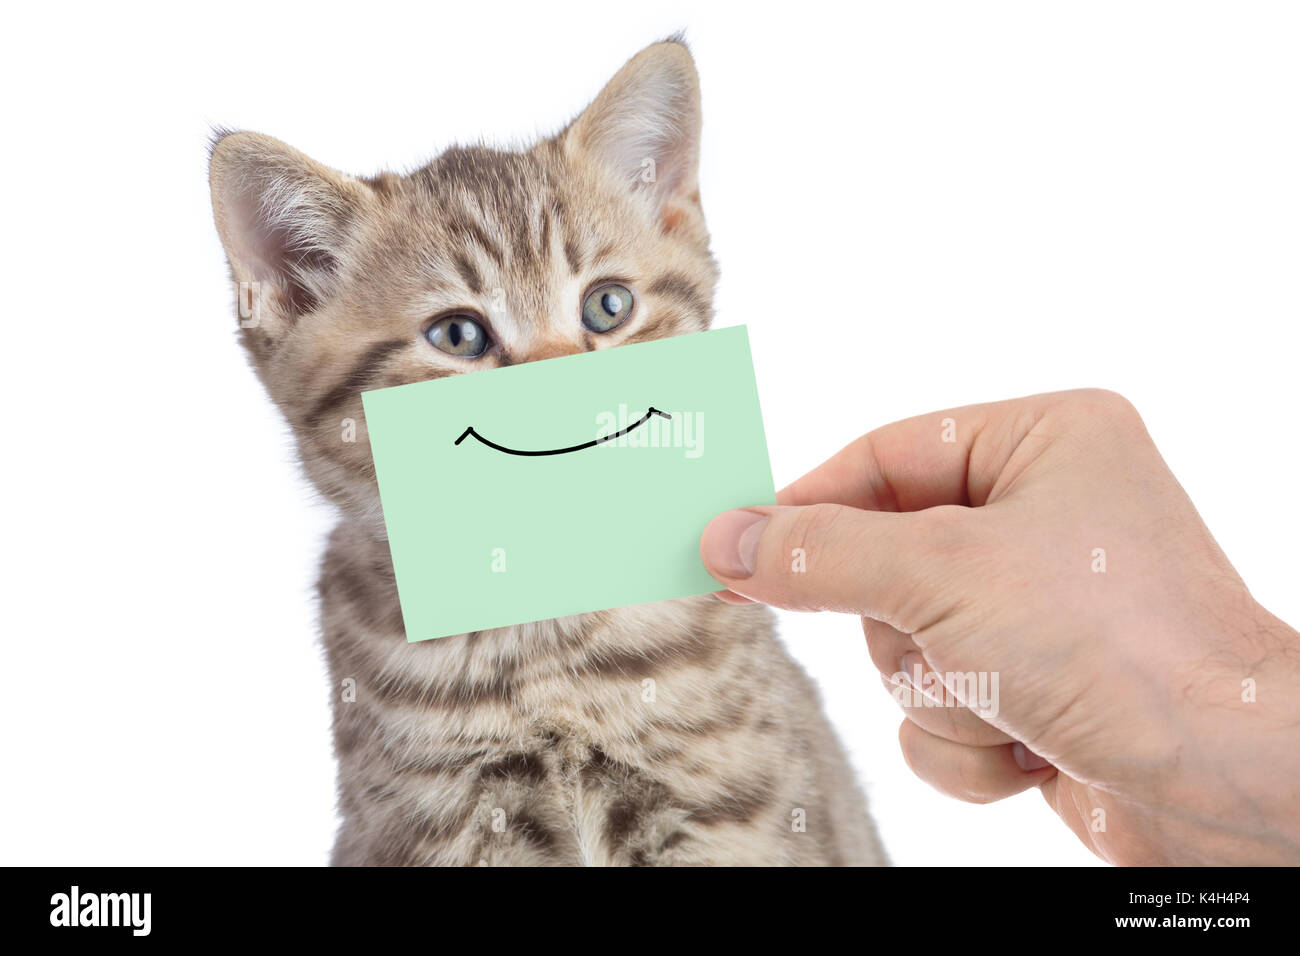 Funny Happy cat giovani ritratto con sorriso sul cartone verde isolato su bianco Foto Stock